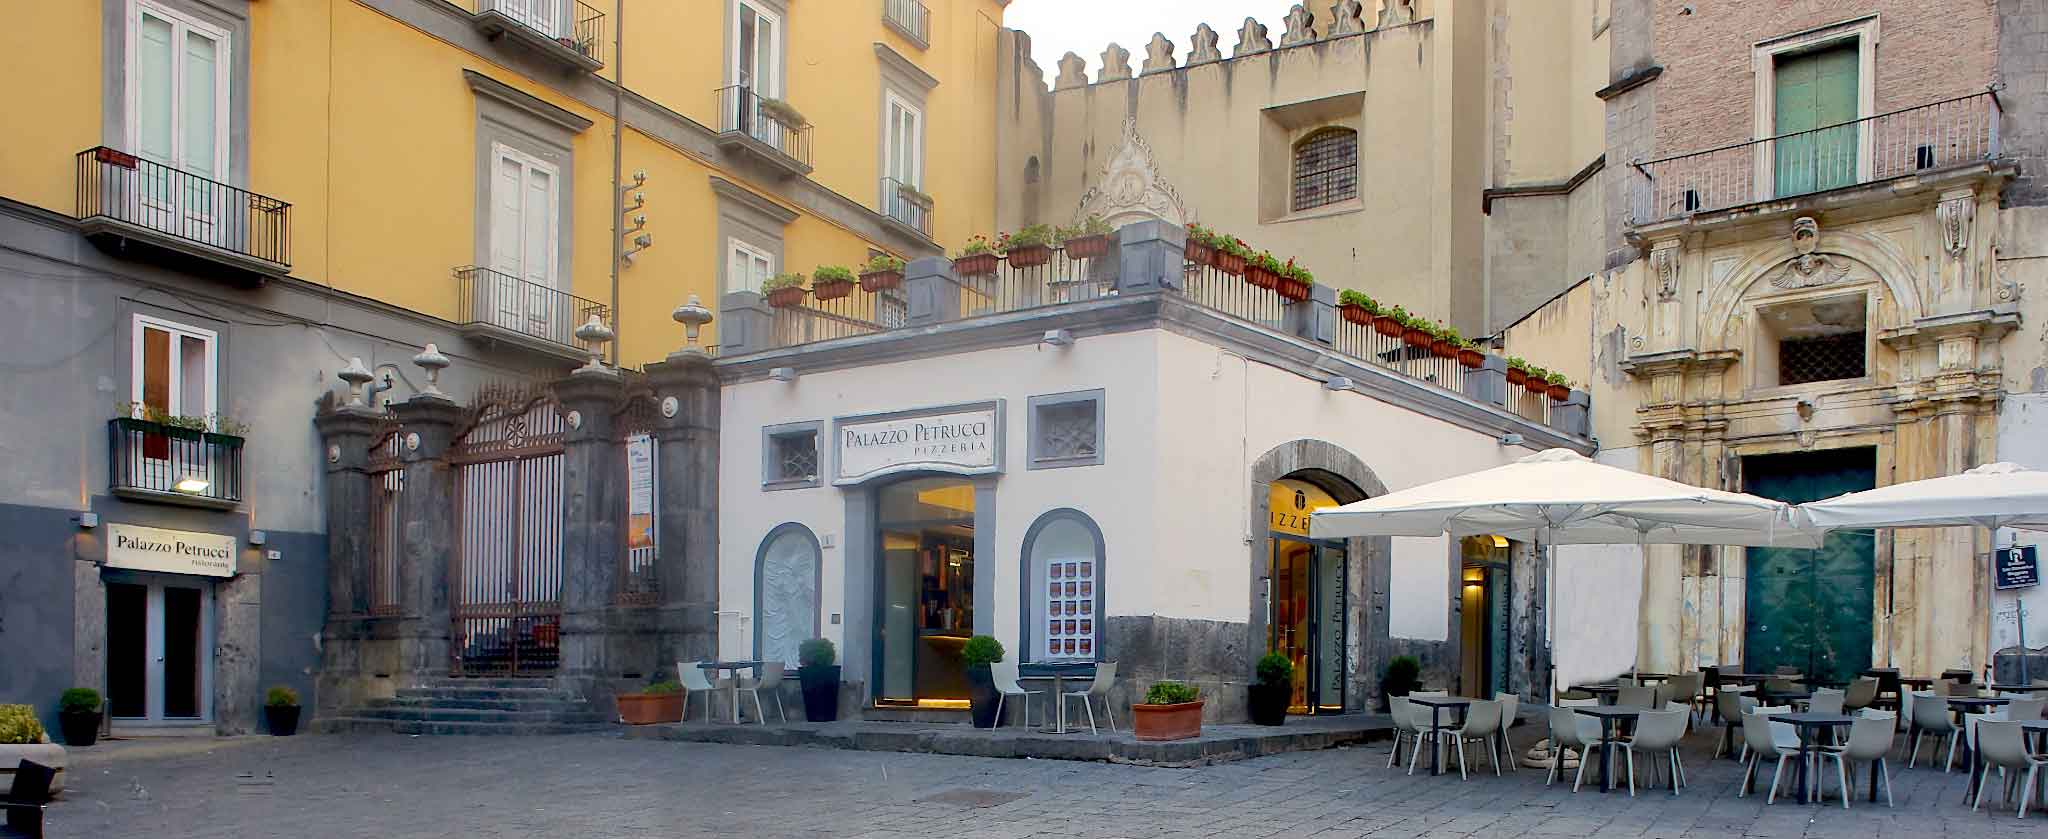 Palazzo Petrucci ristorante e pizzeria Napoli